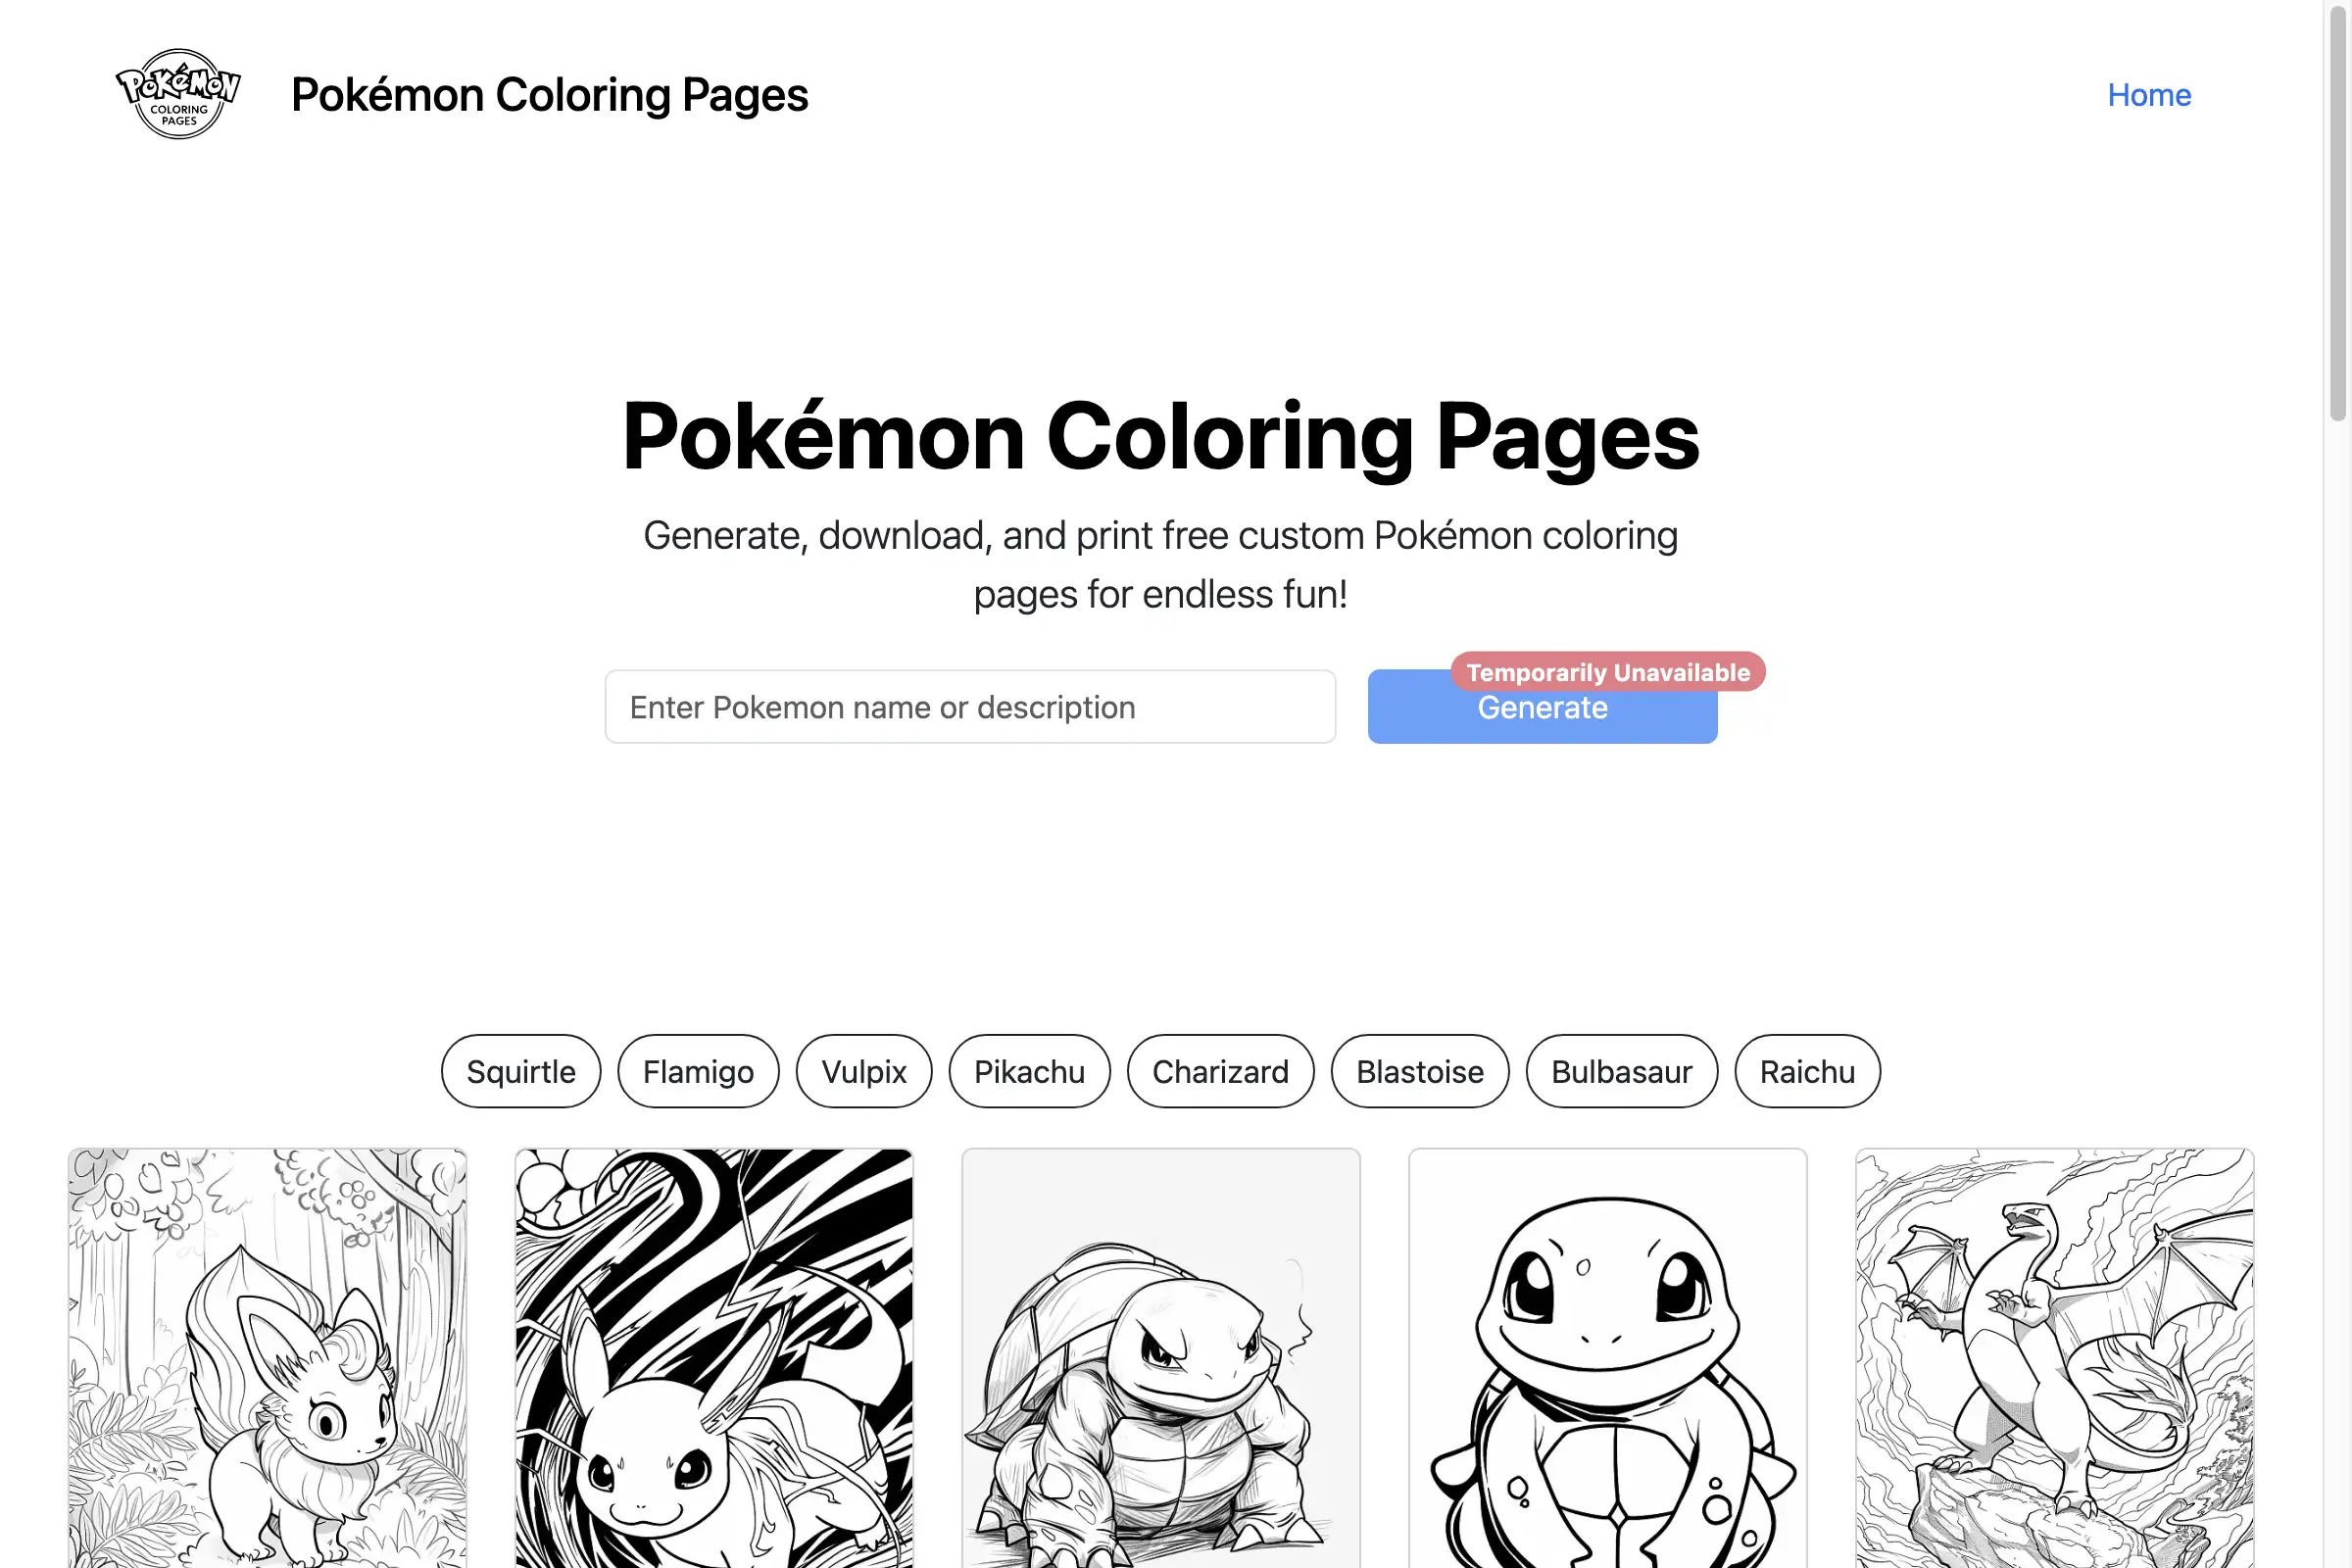 Pokémon Coloring Pages